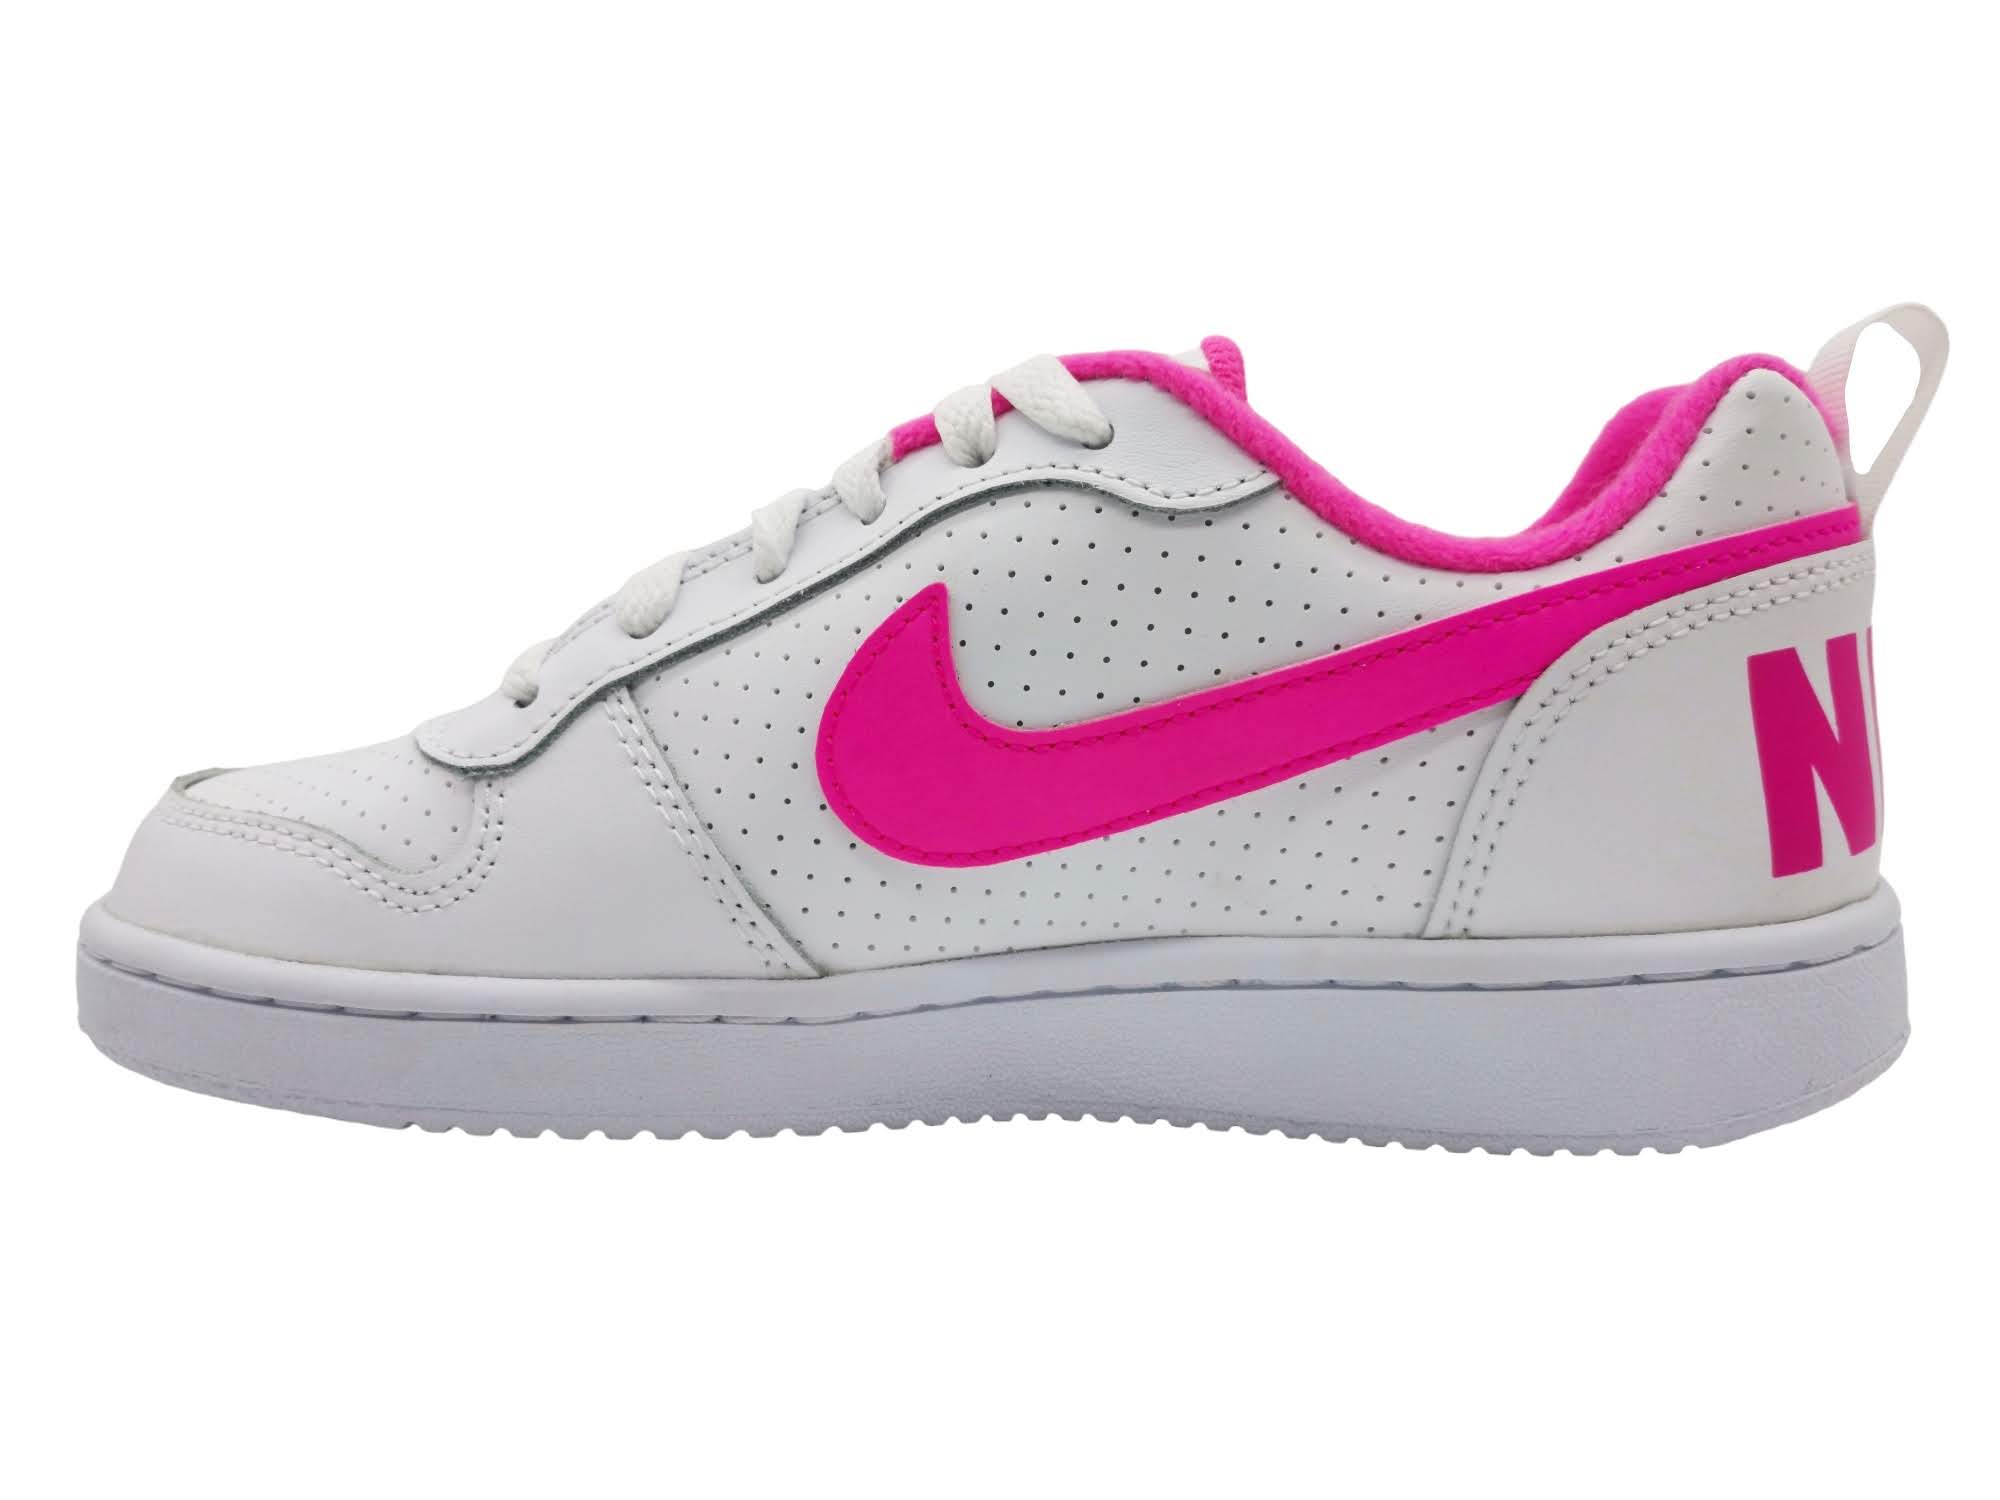 Nike Court Boroug Low GS Para Mujer Blanco-Rosa 845104 100 - Tenis Sport MX